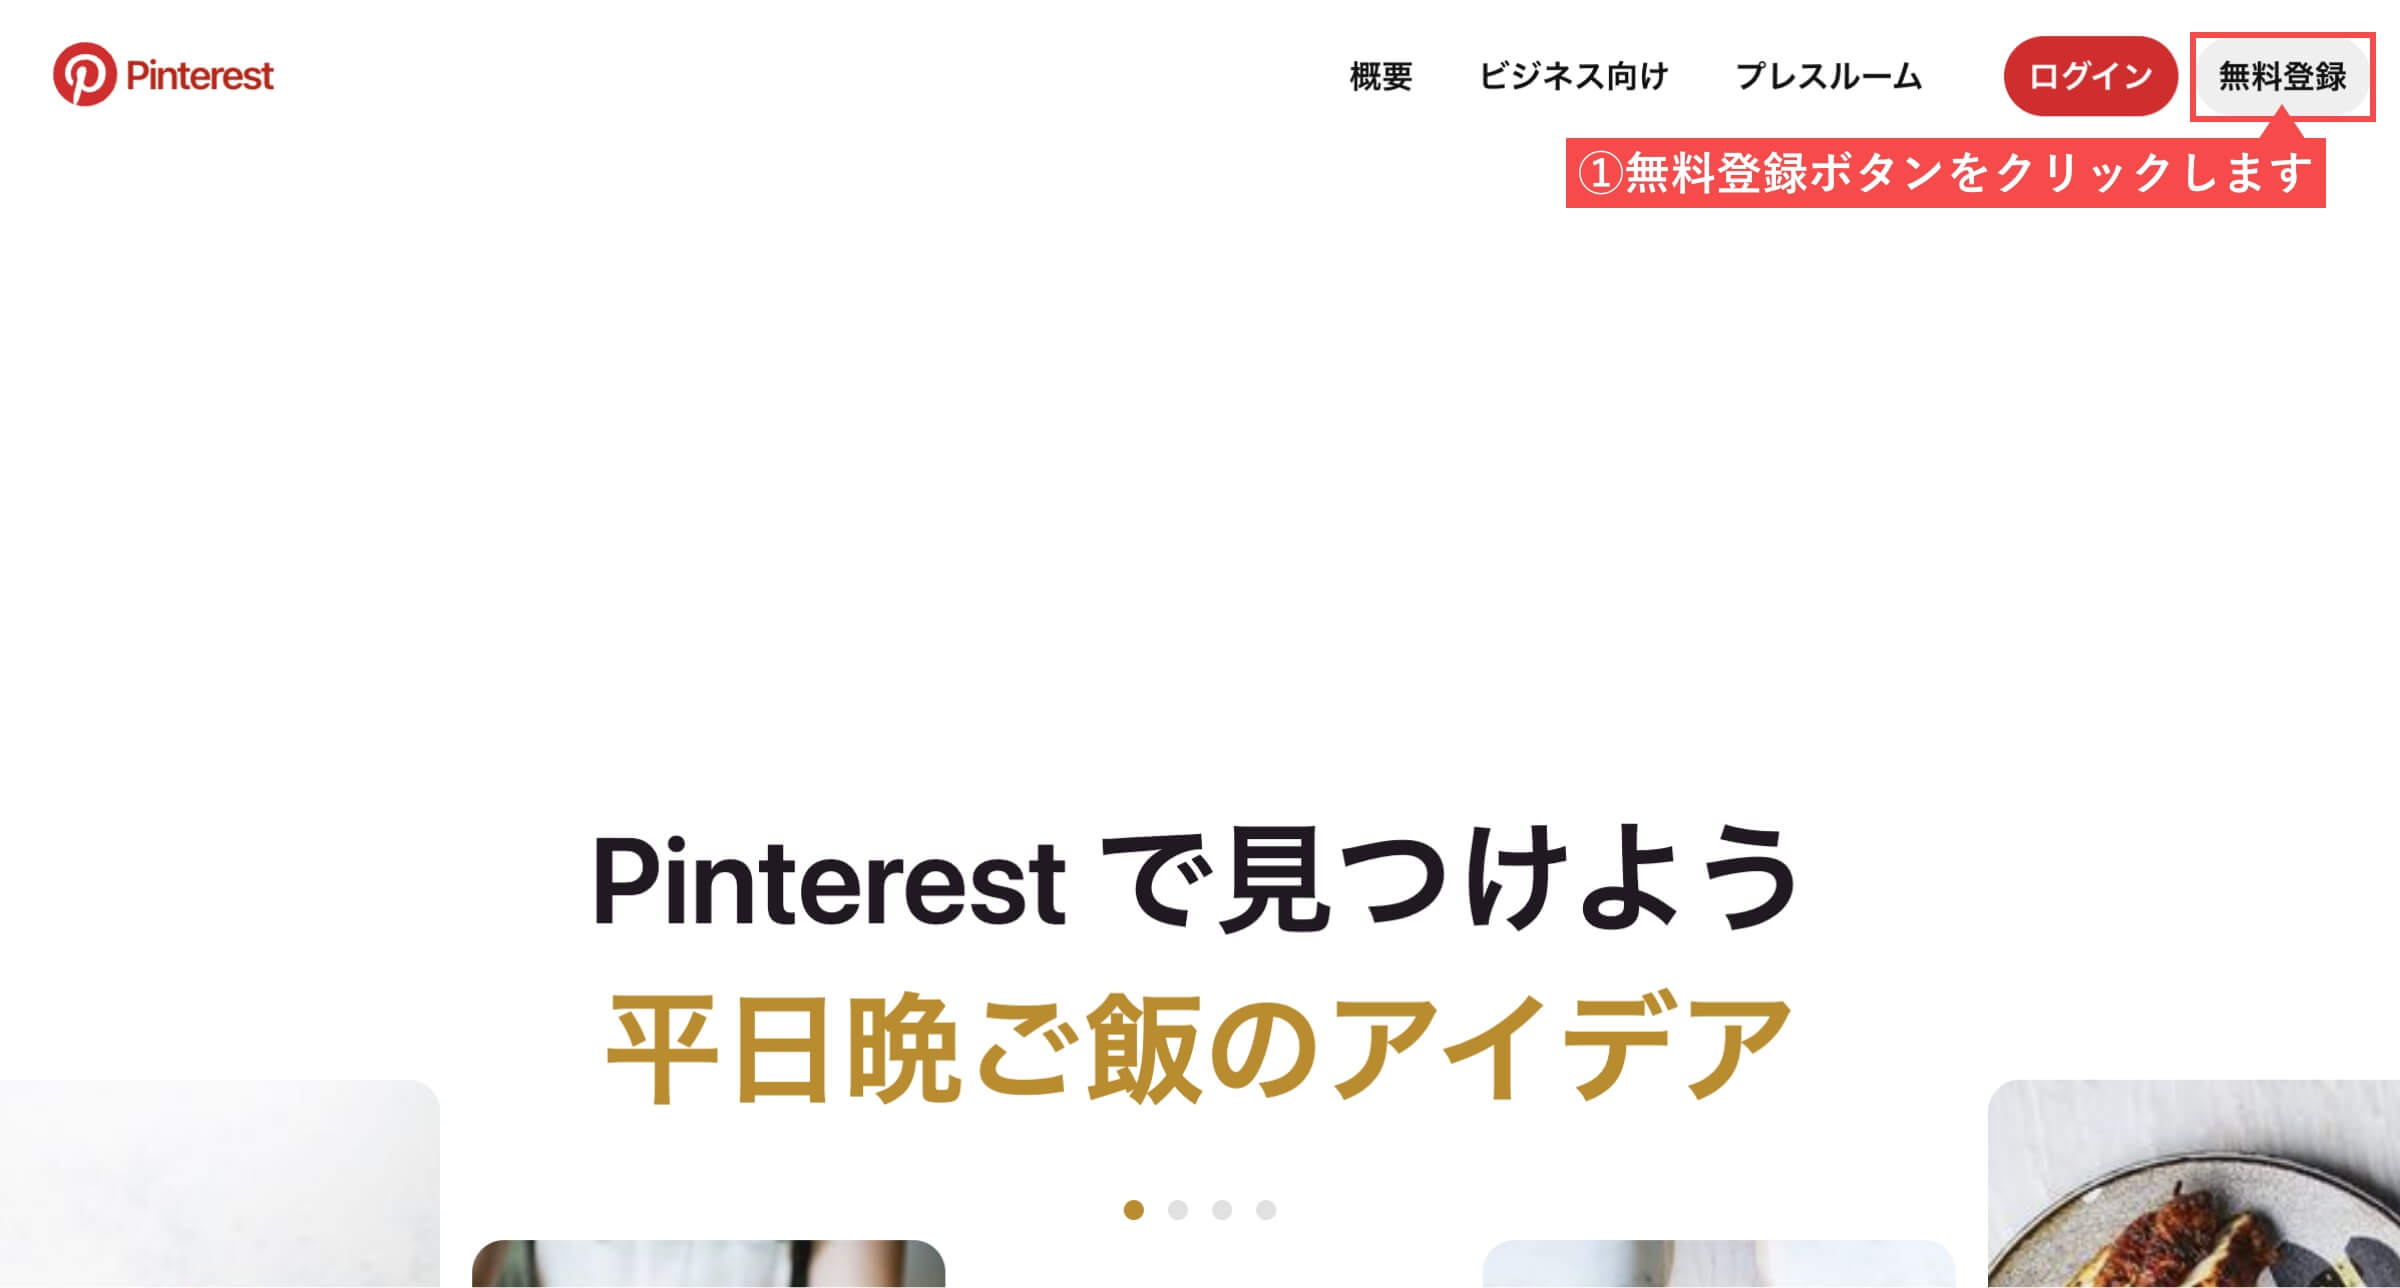 Pinterestのトップページ